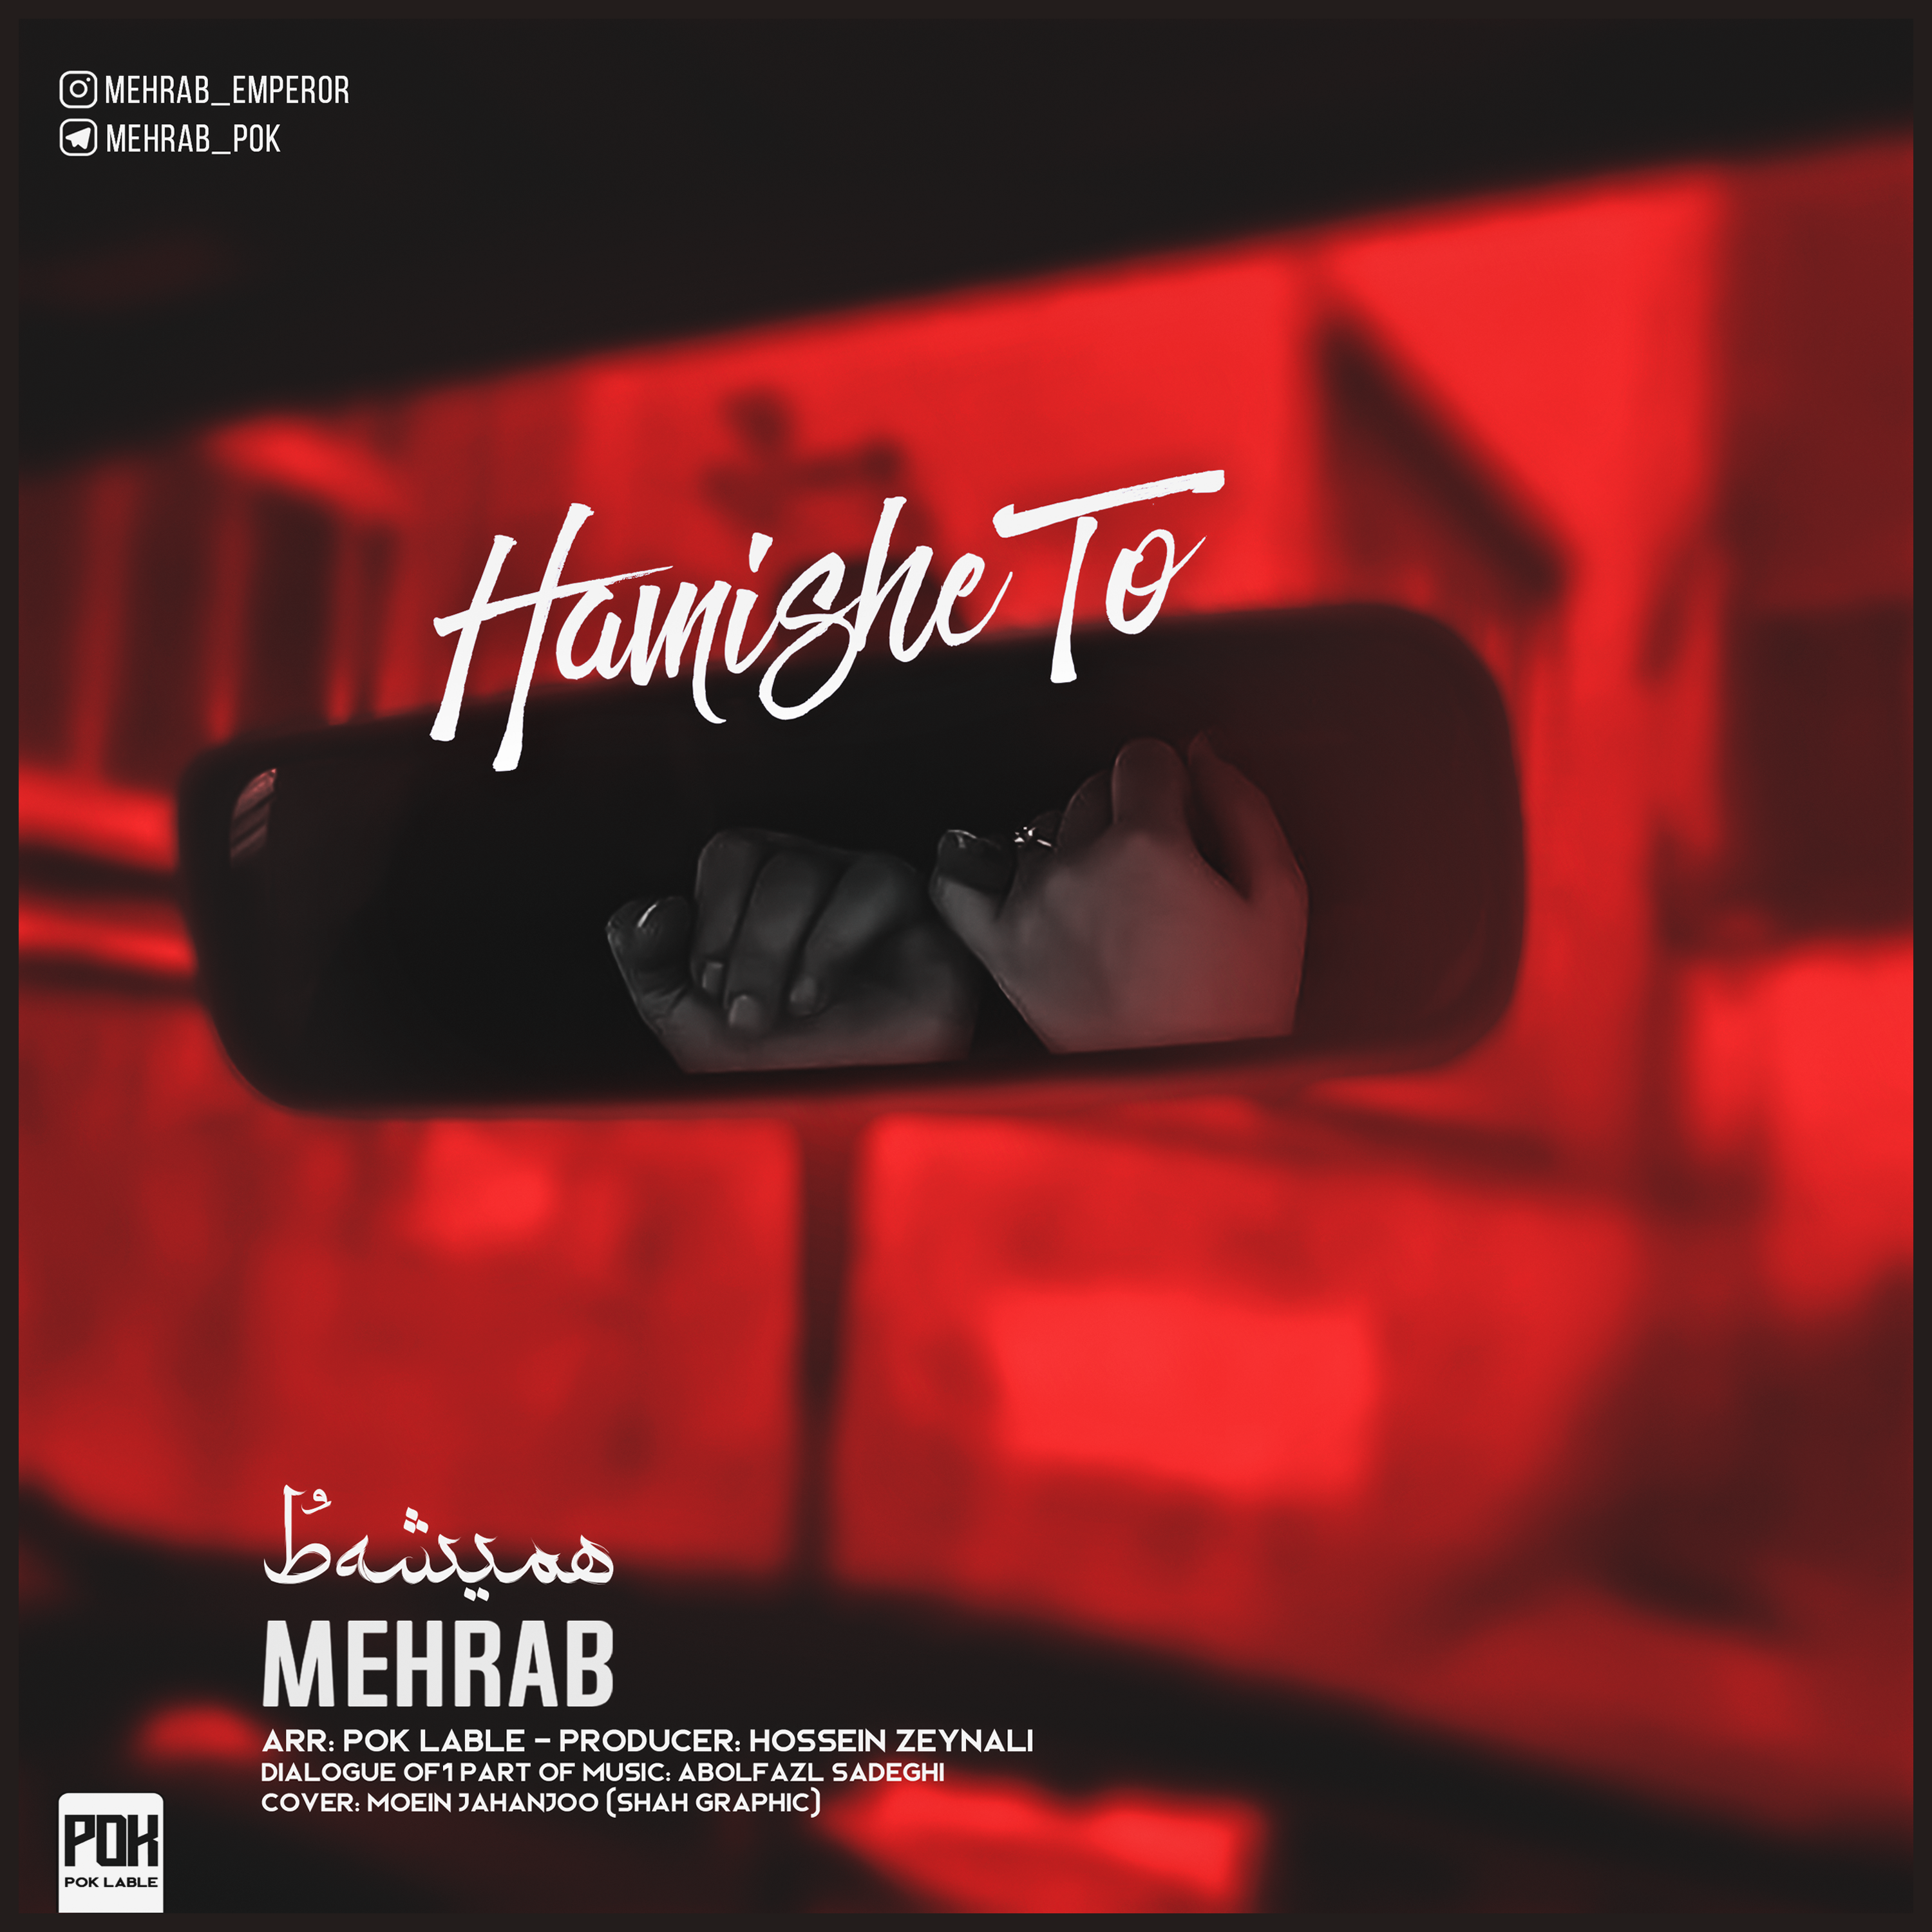  دانلود آهنگ جدید مهراب - همیشه تو | Download New Music By Mehrab - Hamishe To